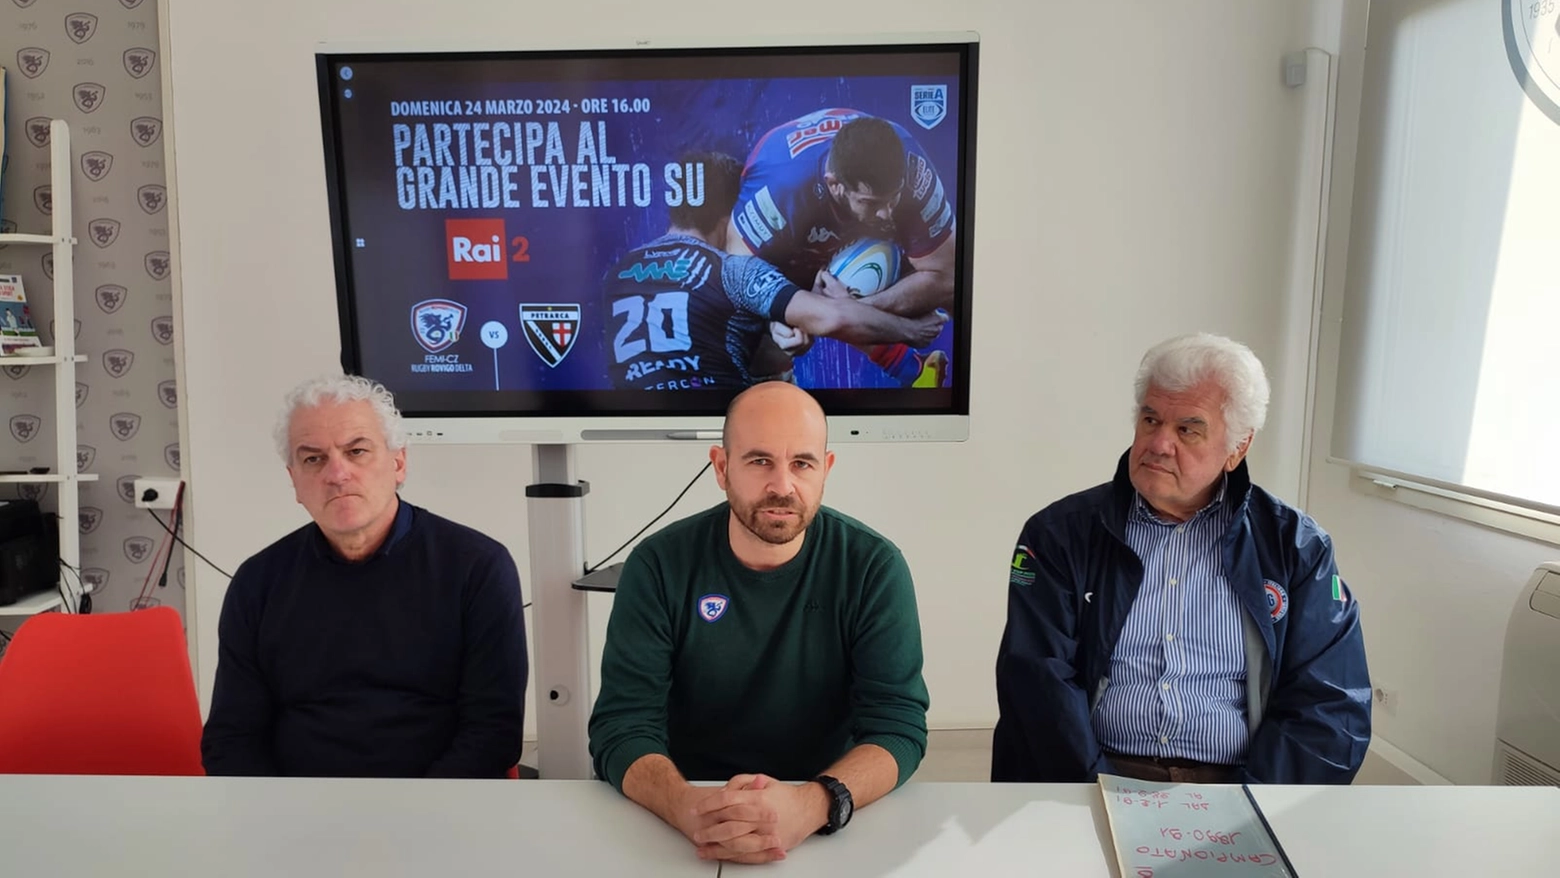 Da sinistra Alberto Guerrini, Andrea Trombini, Roberto Roversi